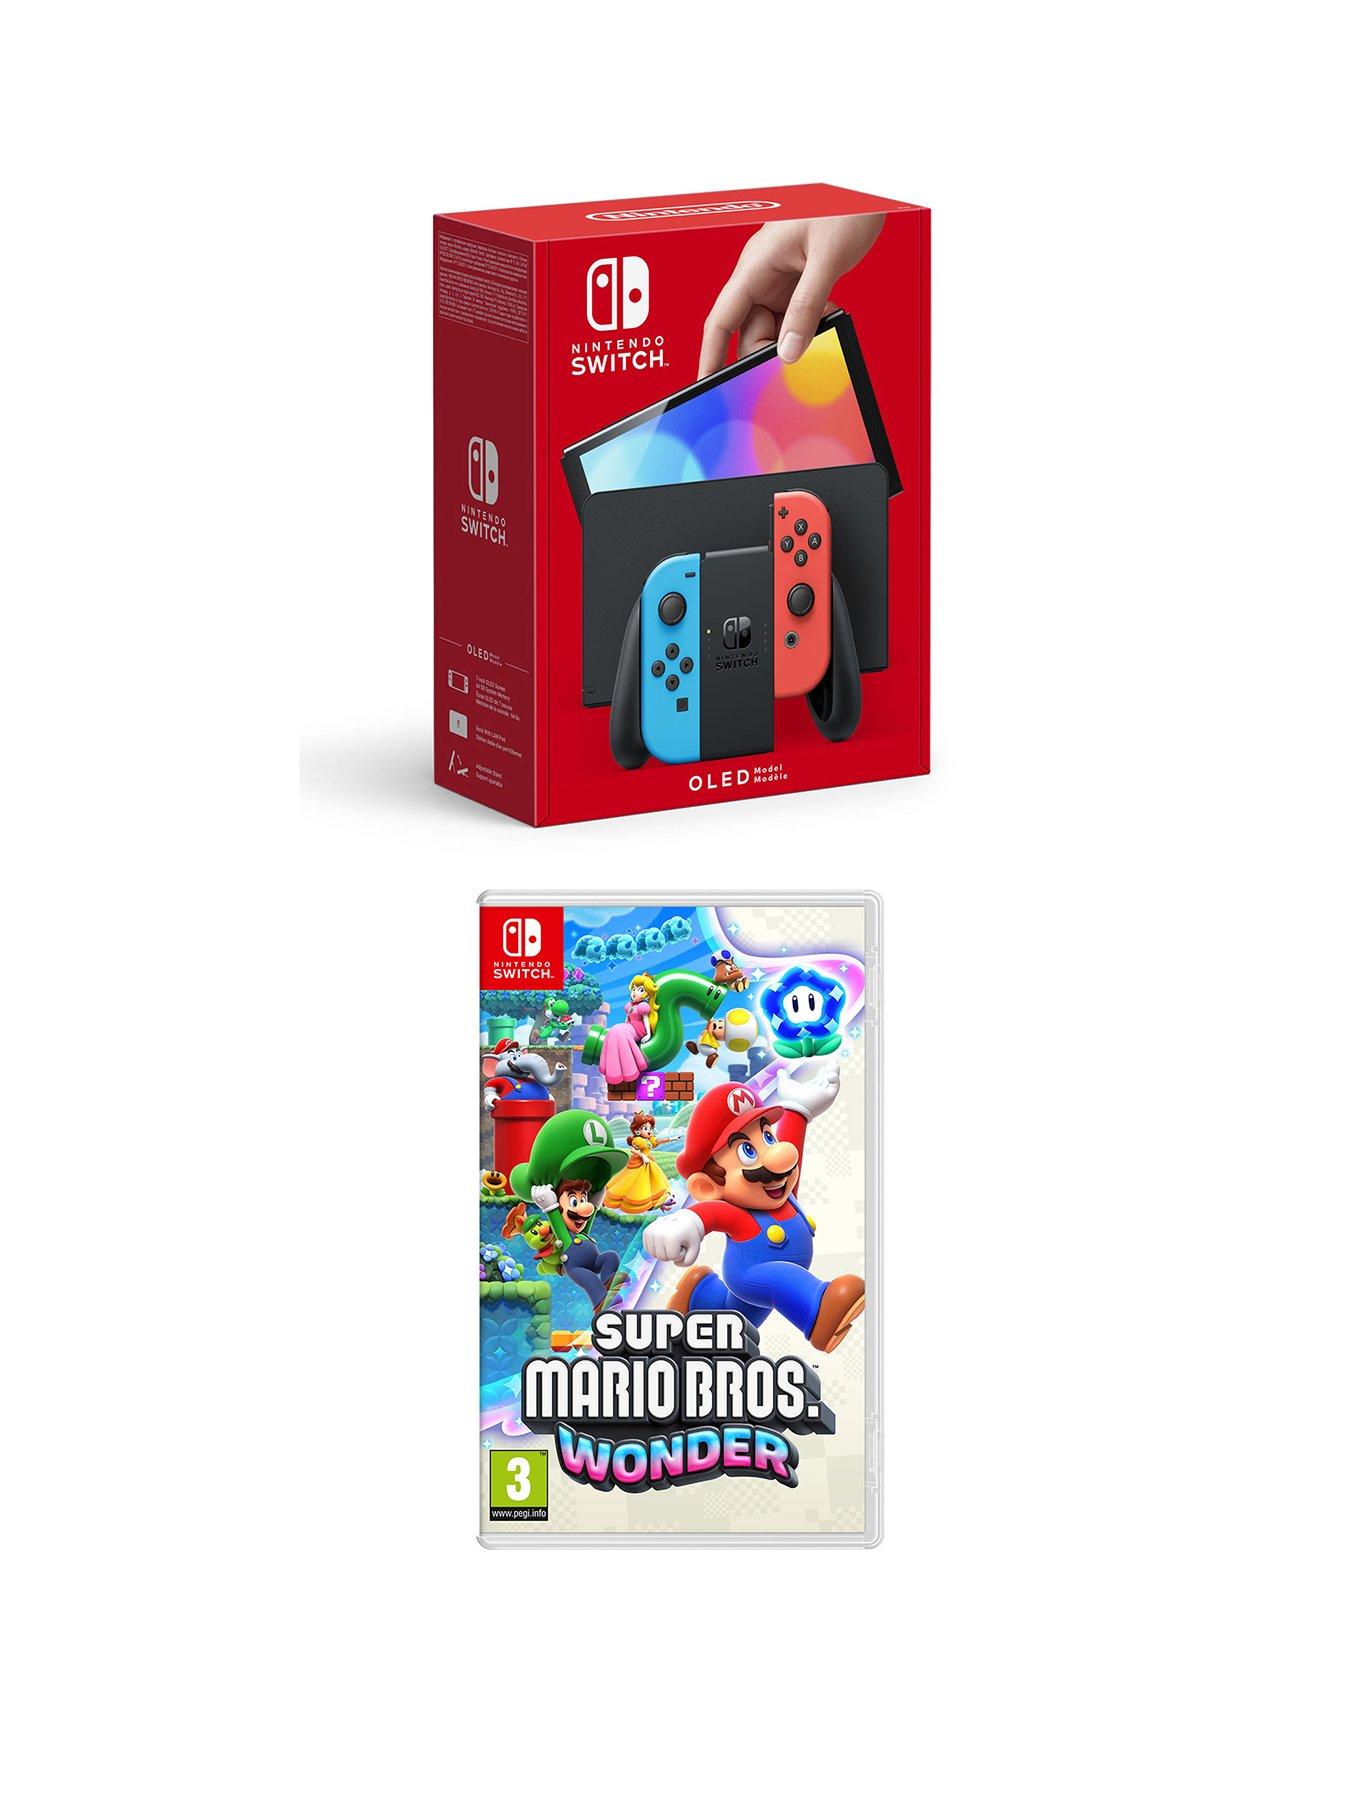 Nintendo Switch (Neon Blue/Red) + Mario Kart 8 Deluxe + Super